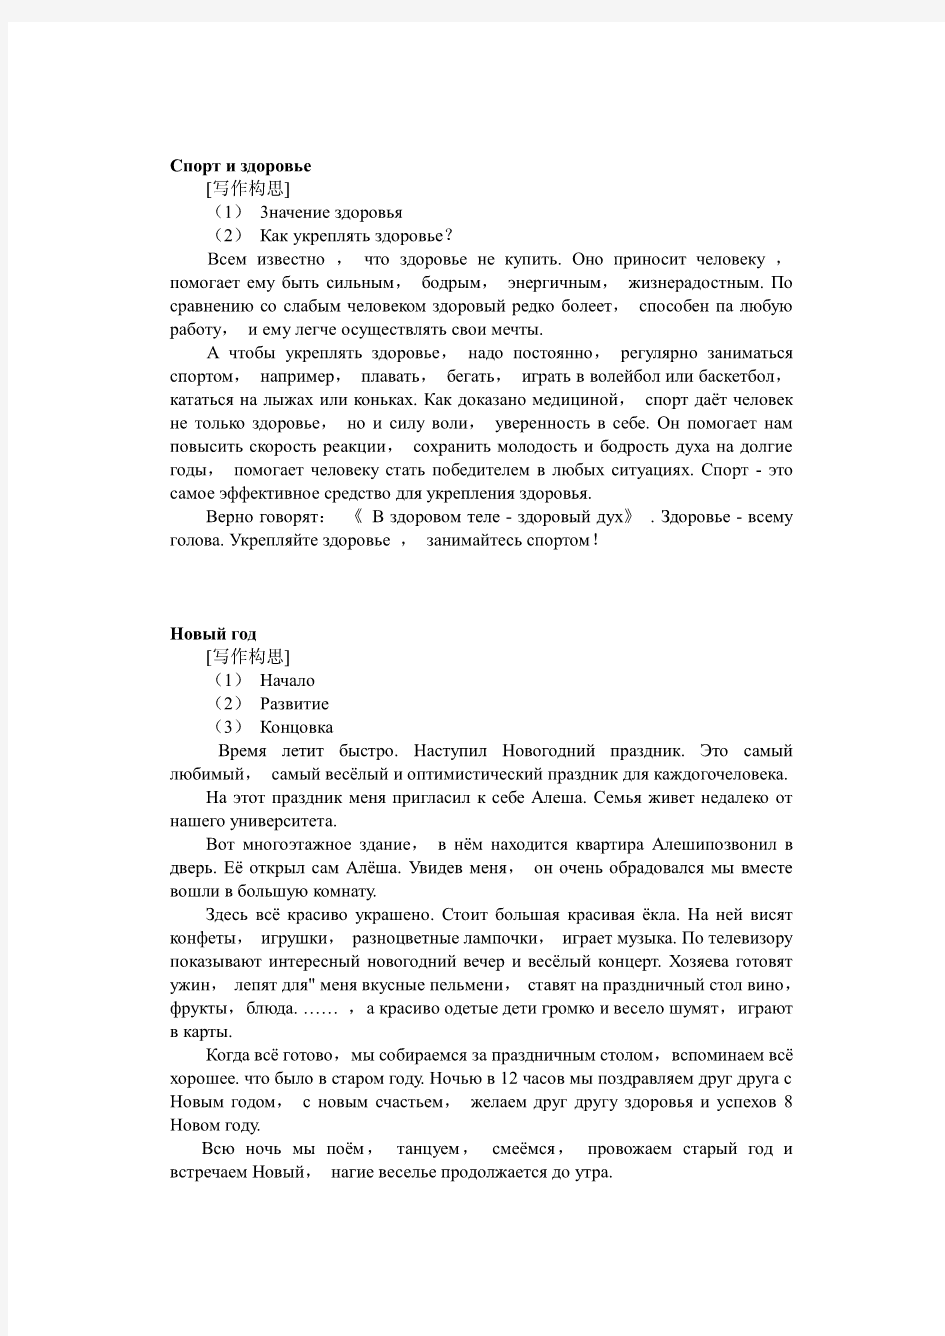 公共俄语四级考试作文范文